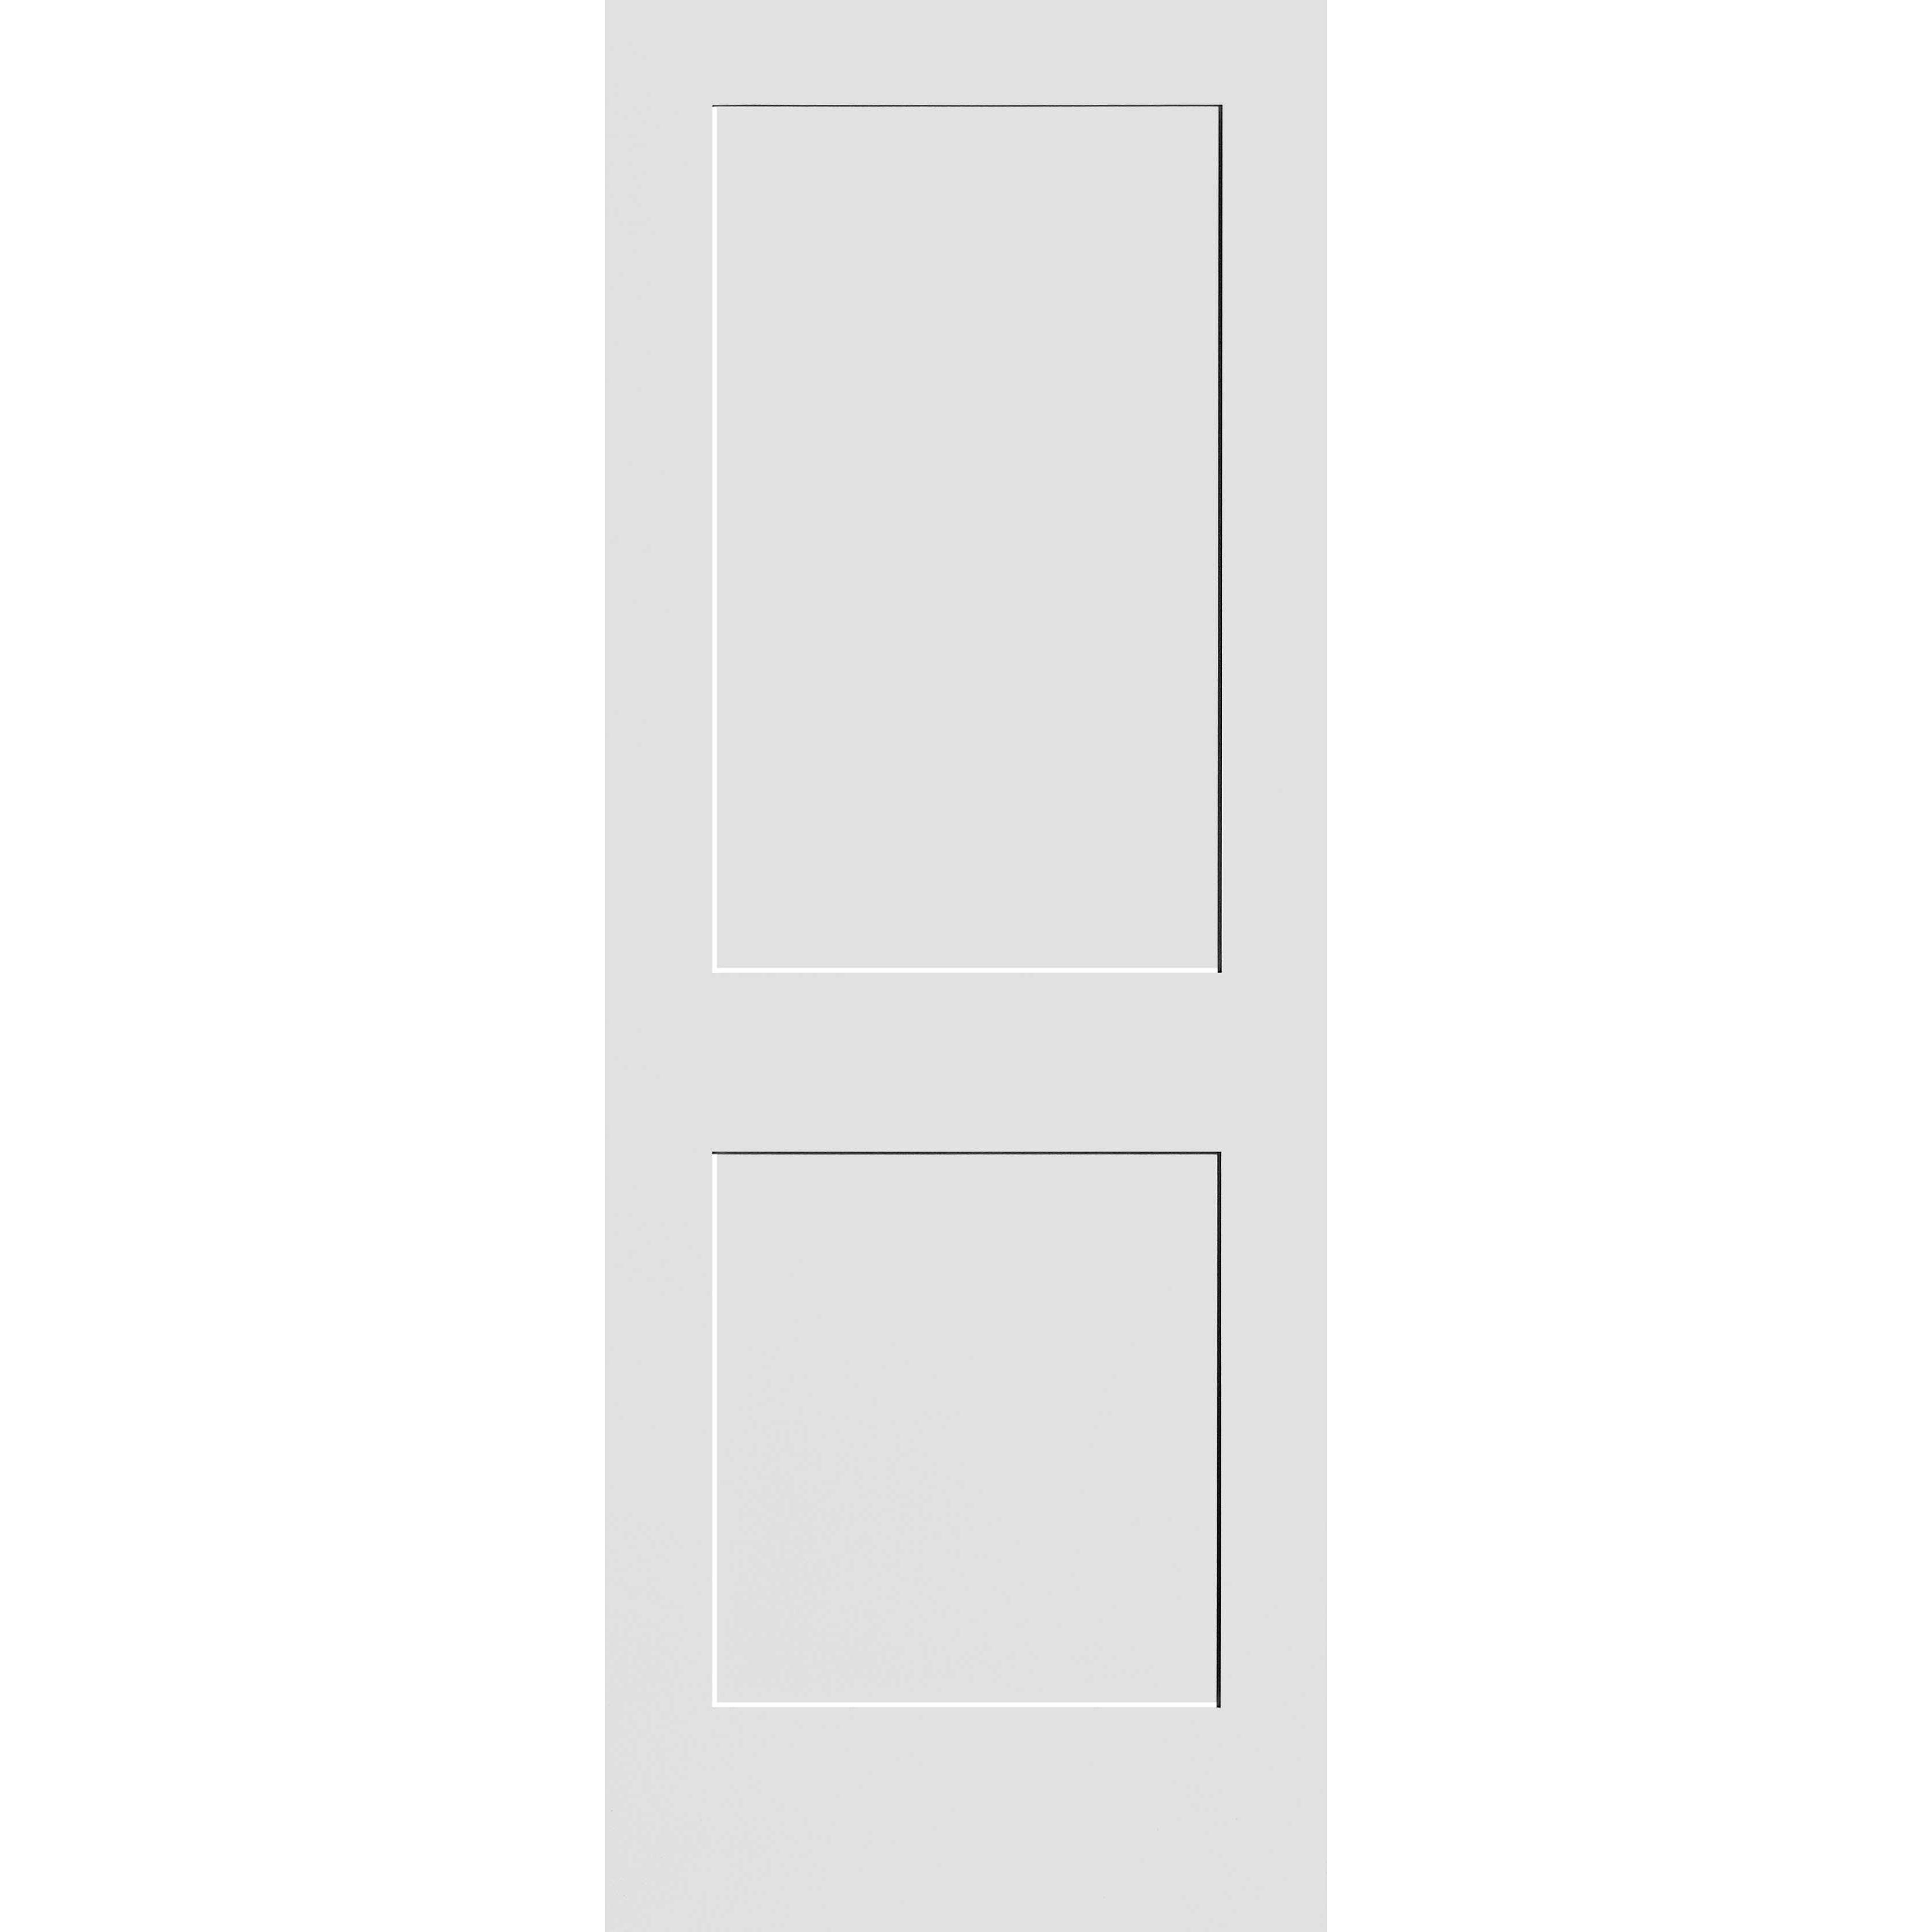 18X80 #8402 MDF PRIMED SHAKER PANEL INTERIOR DOOR